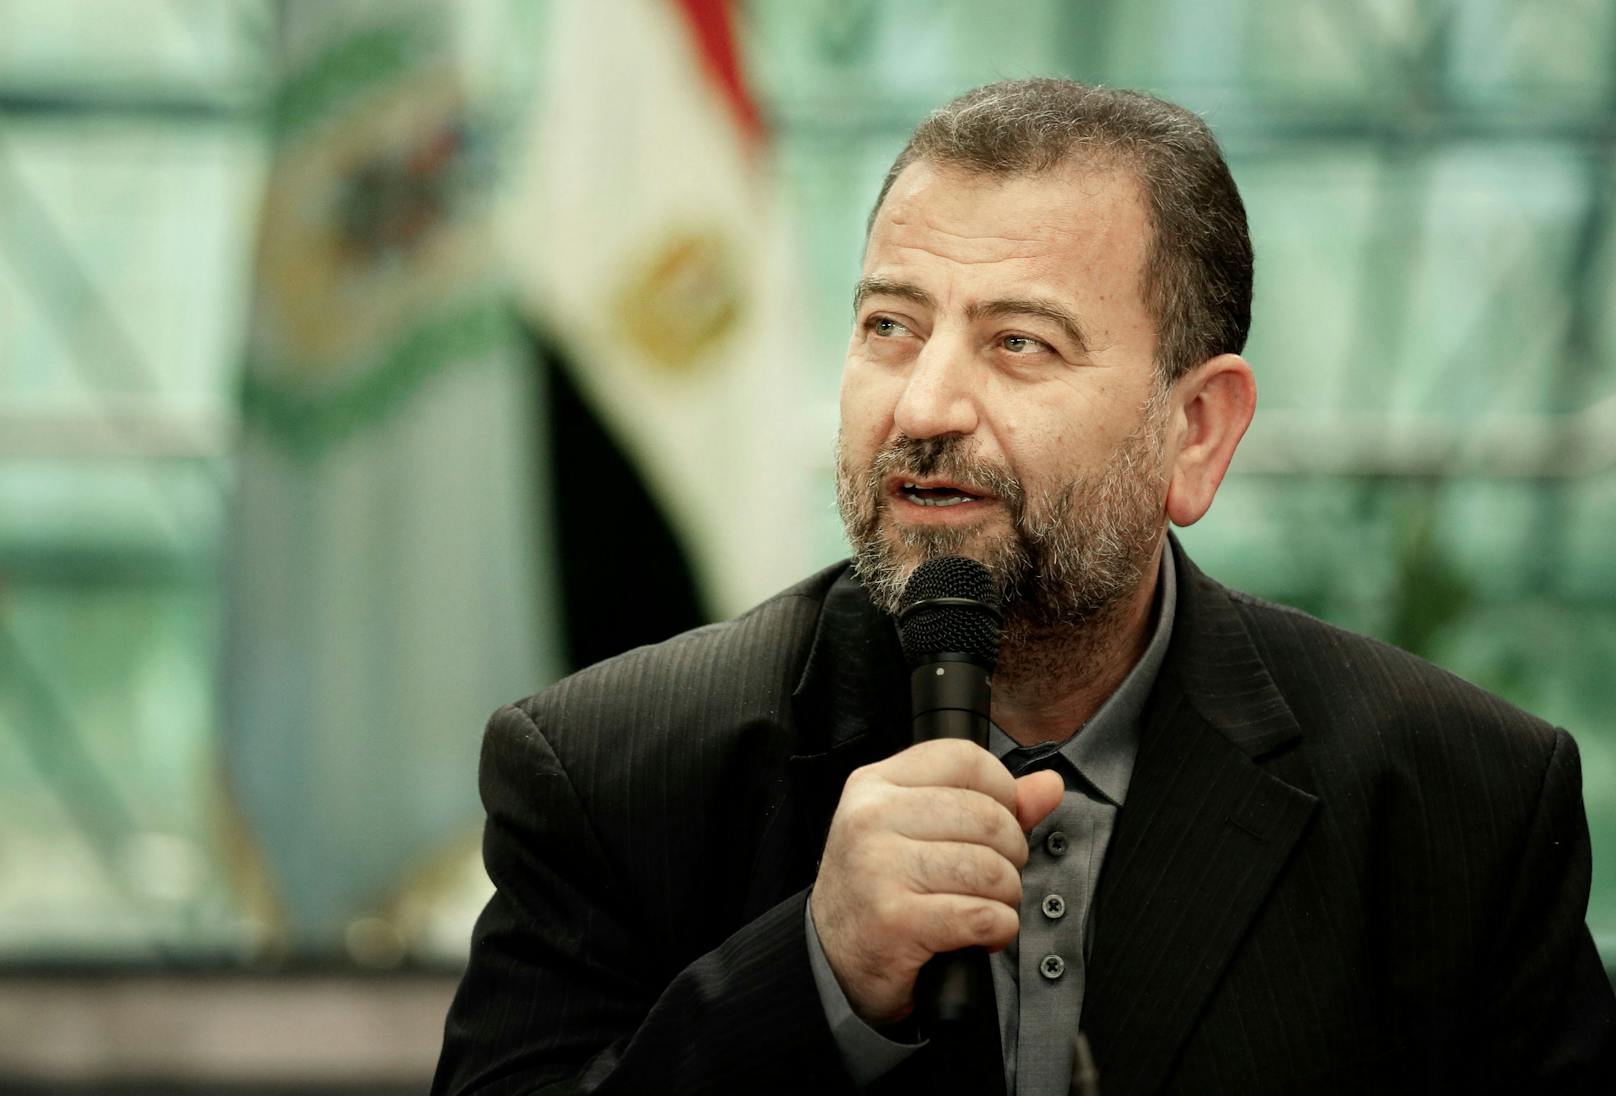 Er gehörte zum hochrangigen Kader der Hamas: Saleh al-Arouri wurde am Dienstag in Libanon bei einer Explosion getötet.